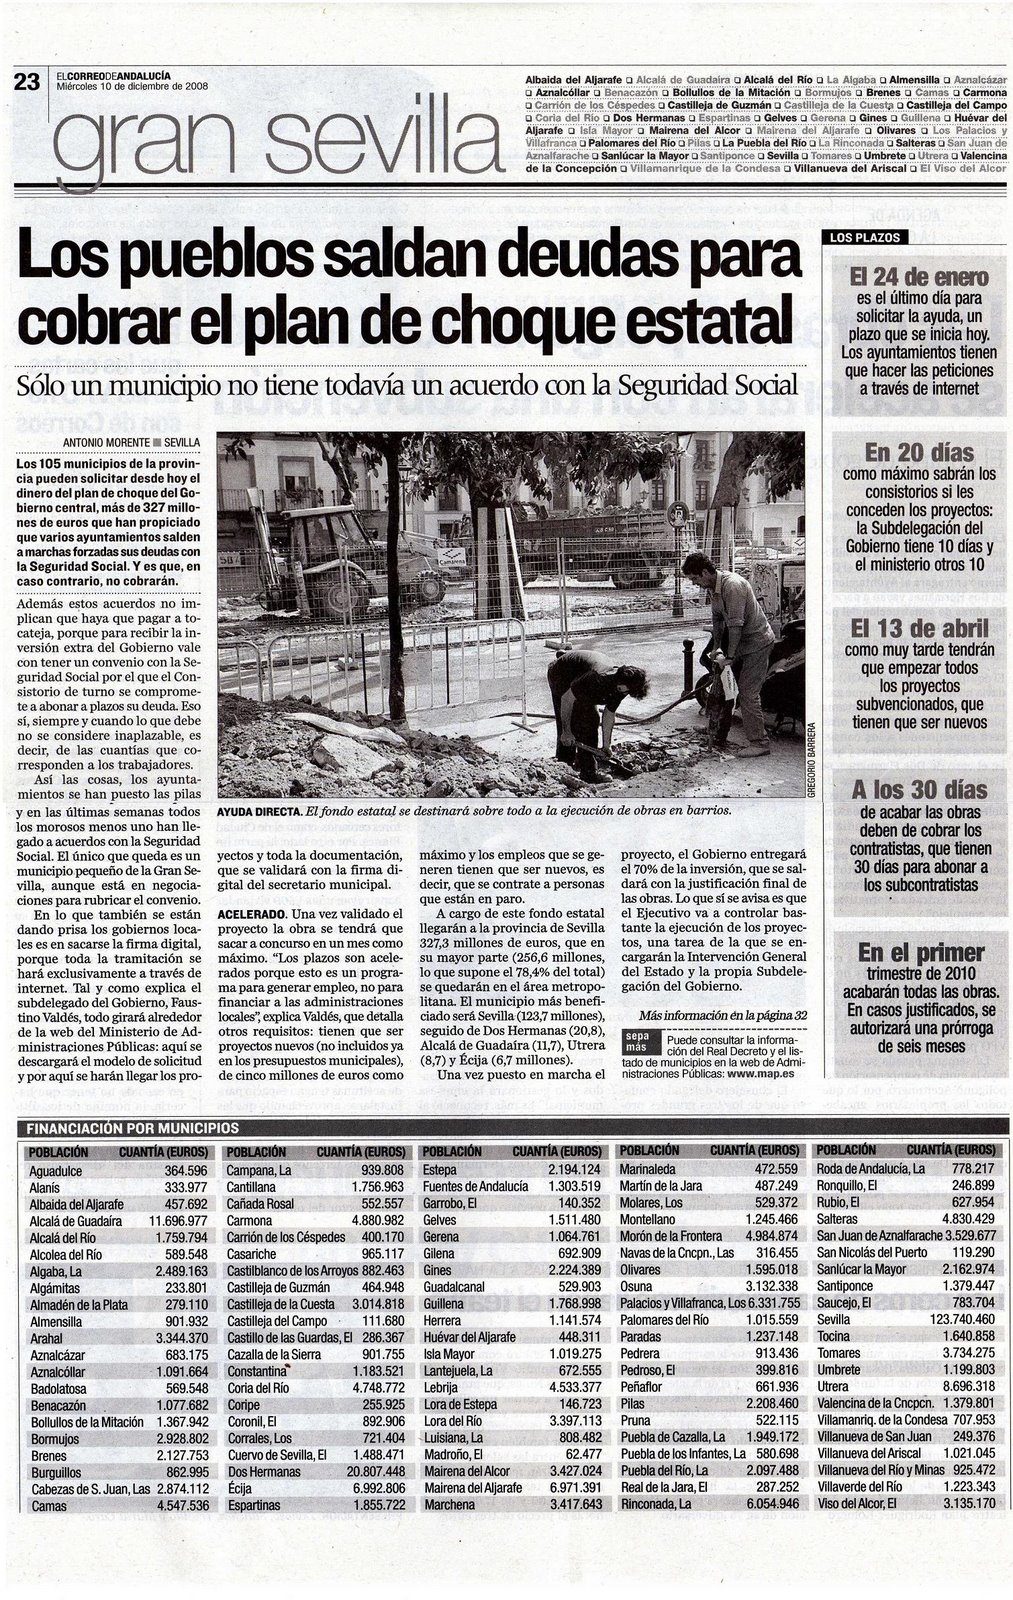 [2008+12+10+CORREO+ANDALUCÃ A+LOS+PUEBLOS+SALDAN+DEUDAS+PARA+COBRAR+EL+PLAN+DE+CHOQUE+ESTATAL.JPG]